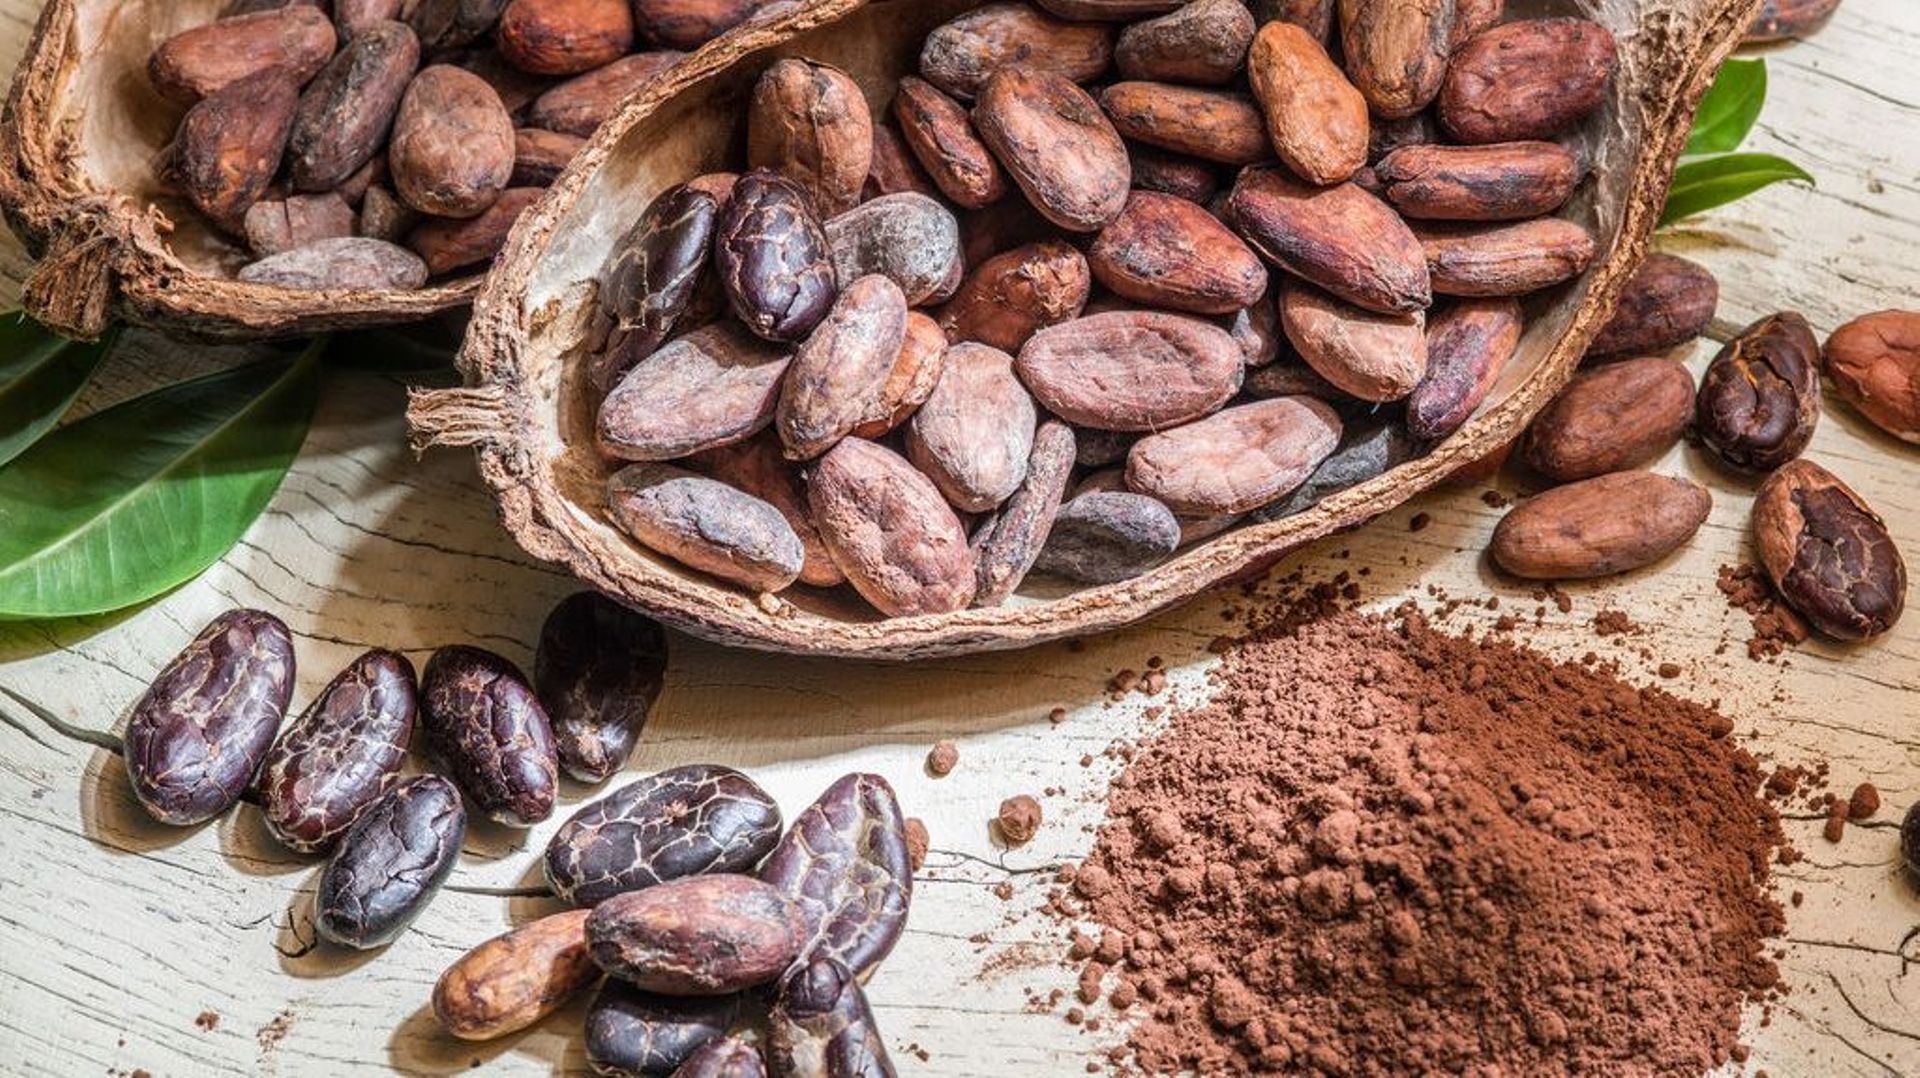 L'ingrédient insolite de Candice: la fève de cacao crue